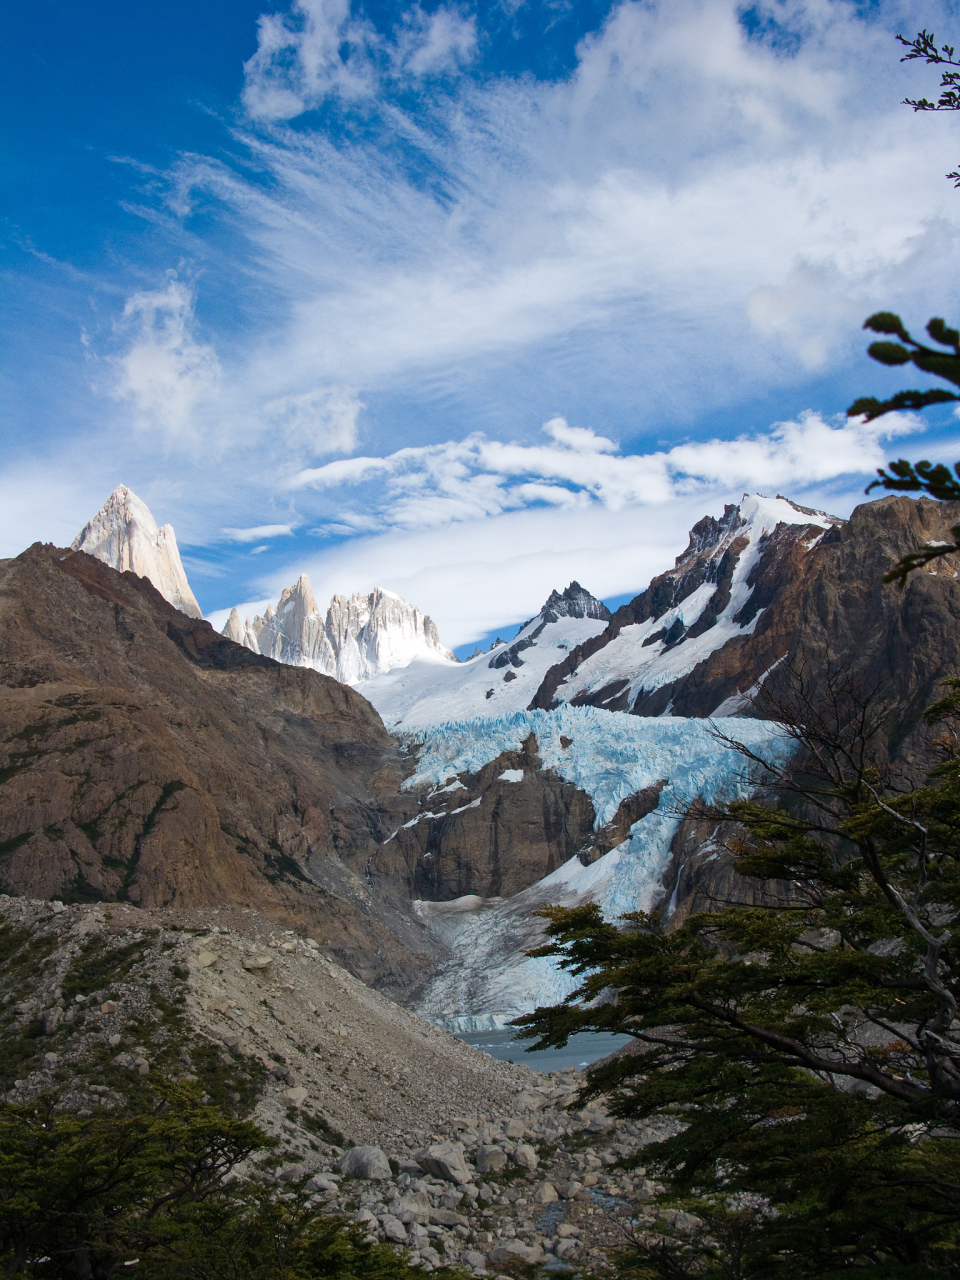 安第斯山脉,位于南美洲的北部,从委内瑞拉的北部开始,一直延伸到智利